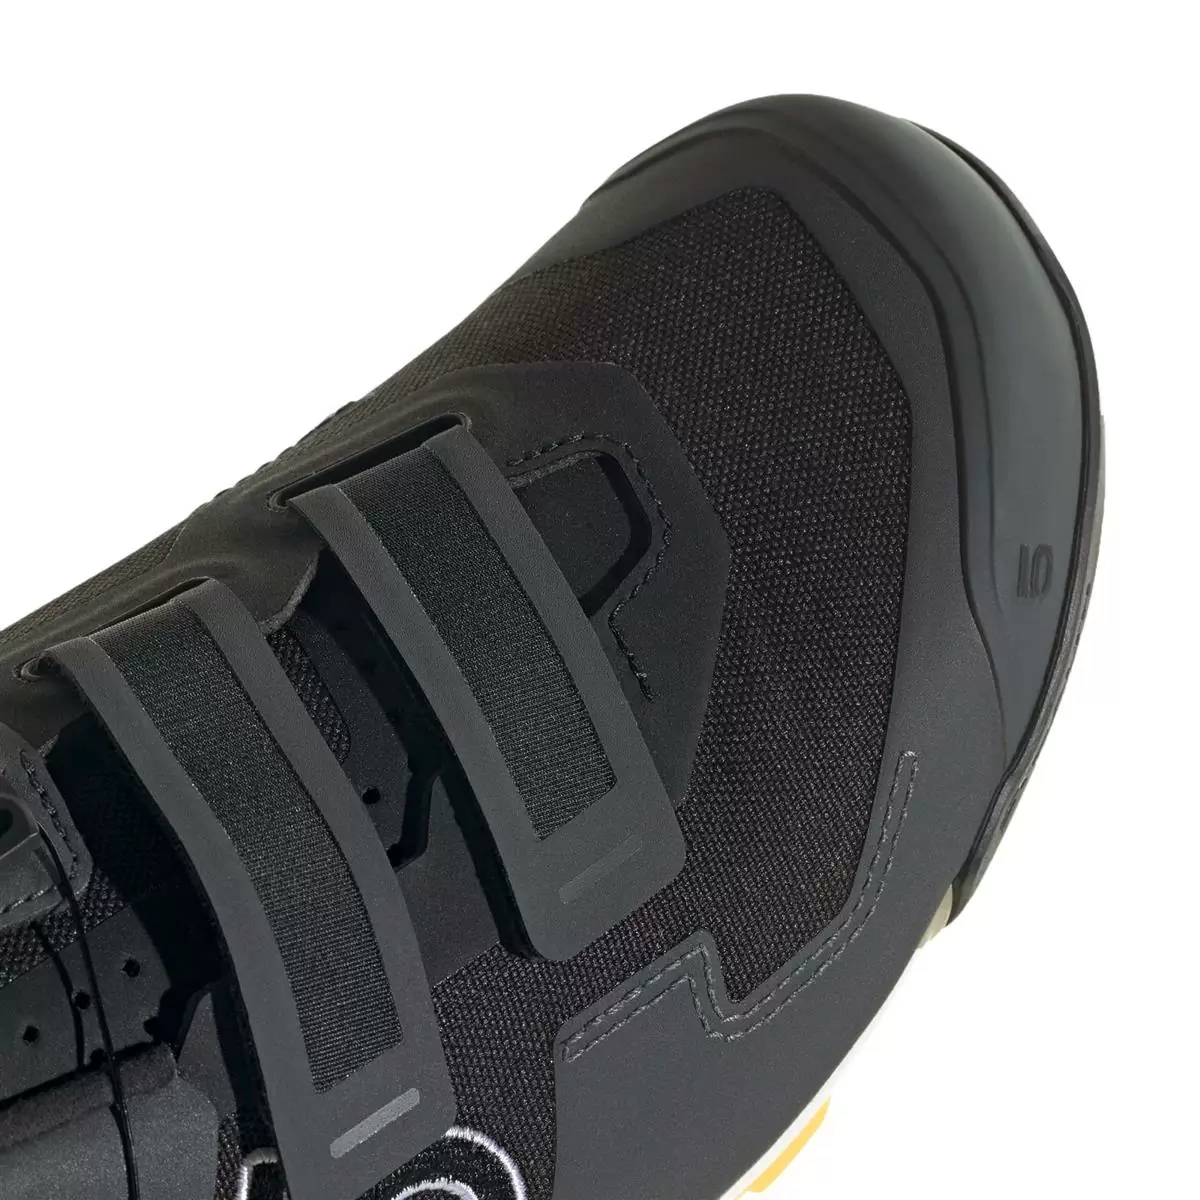 Clip 5.10 Kestrel Boa MTB Shoes Black/Orange Size 41.5 #6